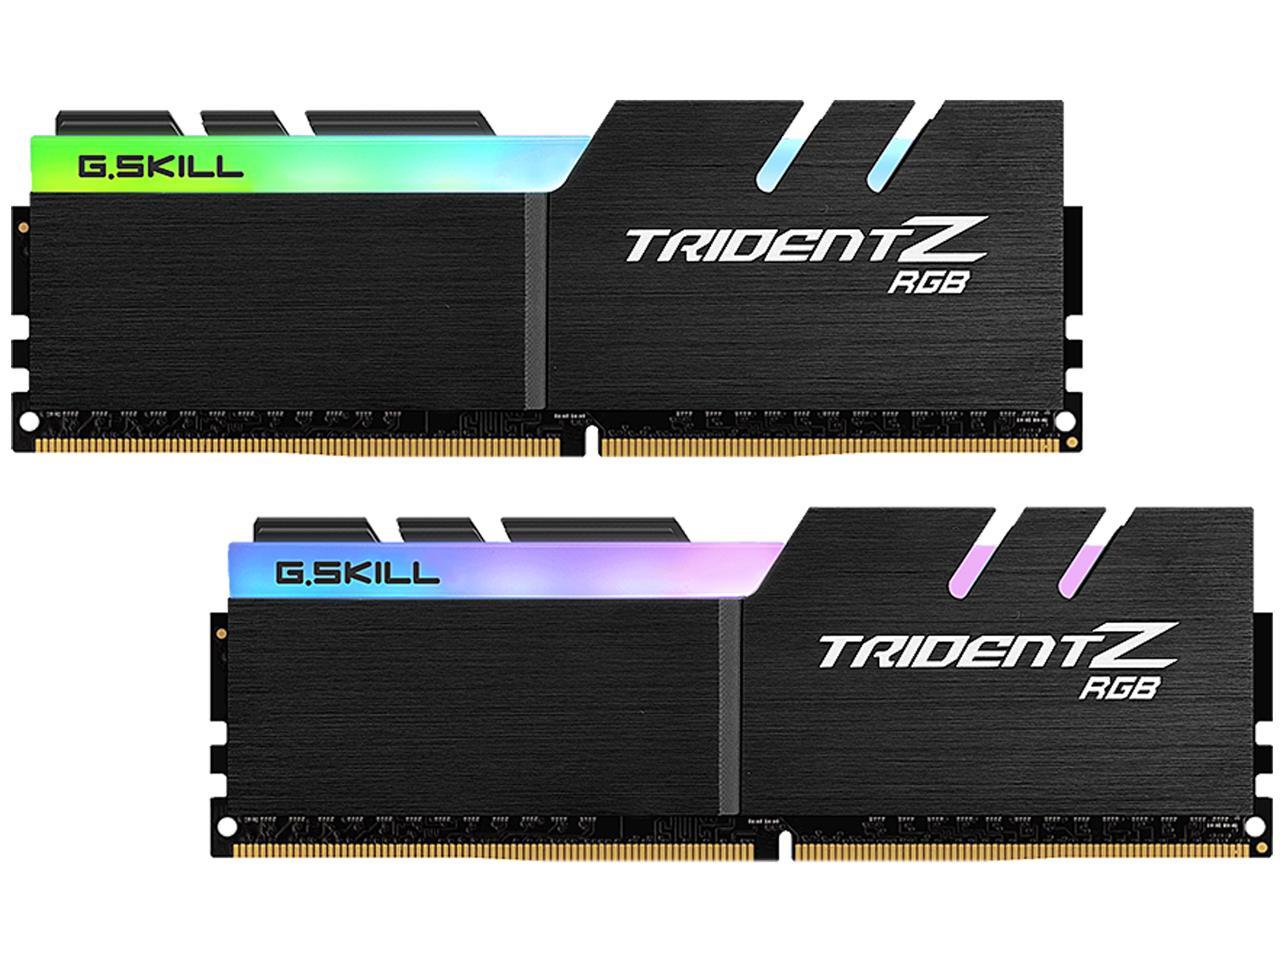 G.SKILL Trident Z RGB (For AMD) 16GB (2 x 8GB) 288-Pin DDR4 SDRAM DDR4 2400 (PC4 19200) AMD X370 / X399 Desktop Memory Model F4-2400C15D-16GTZRX